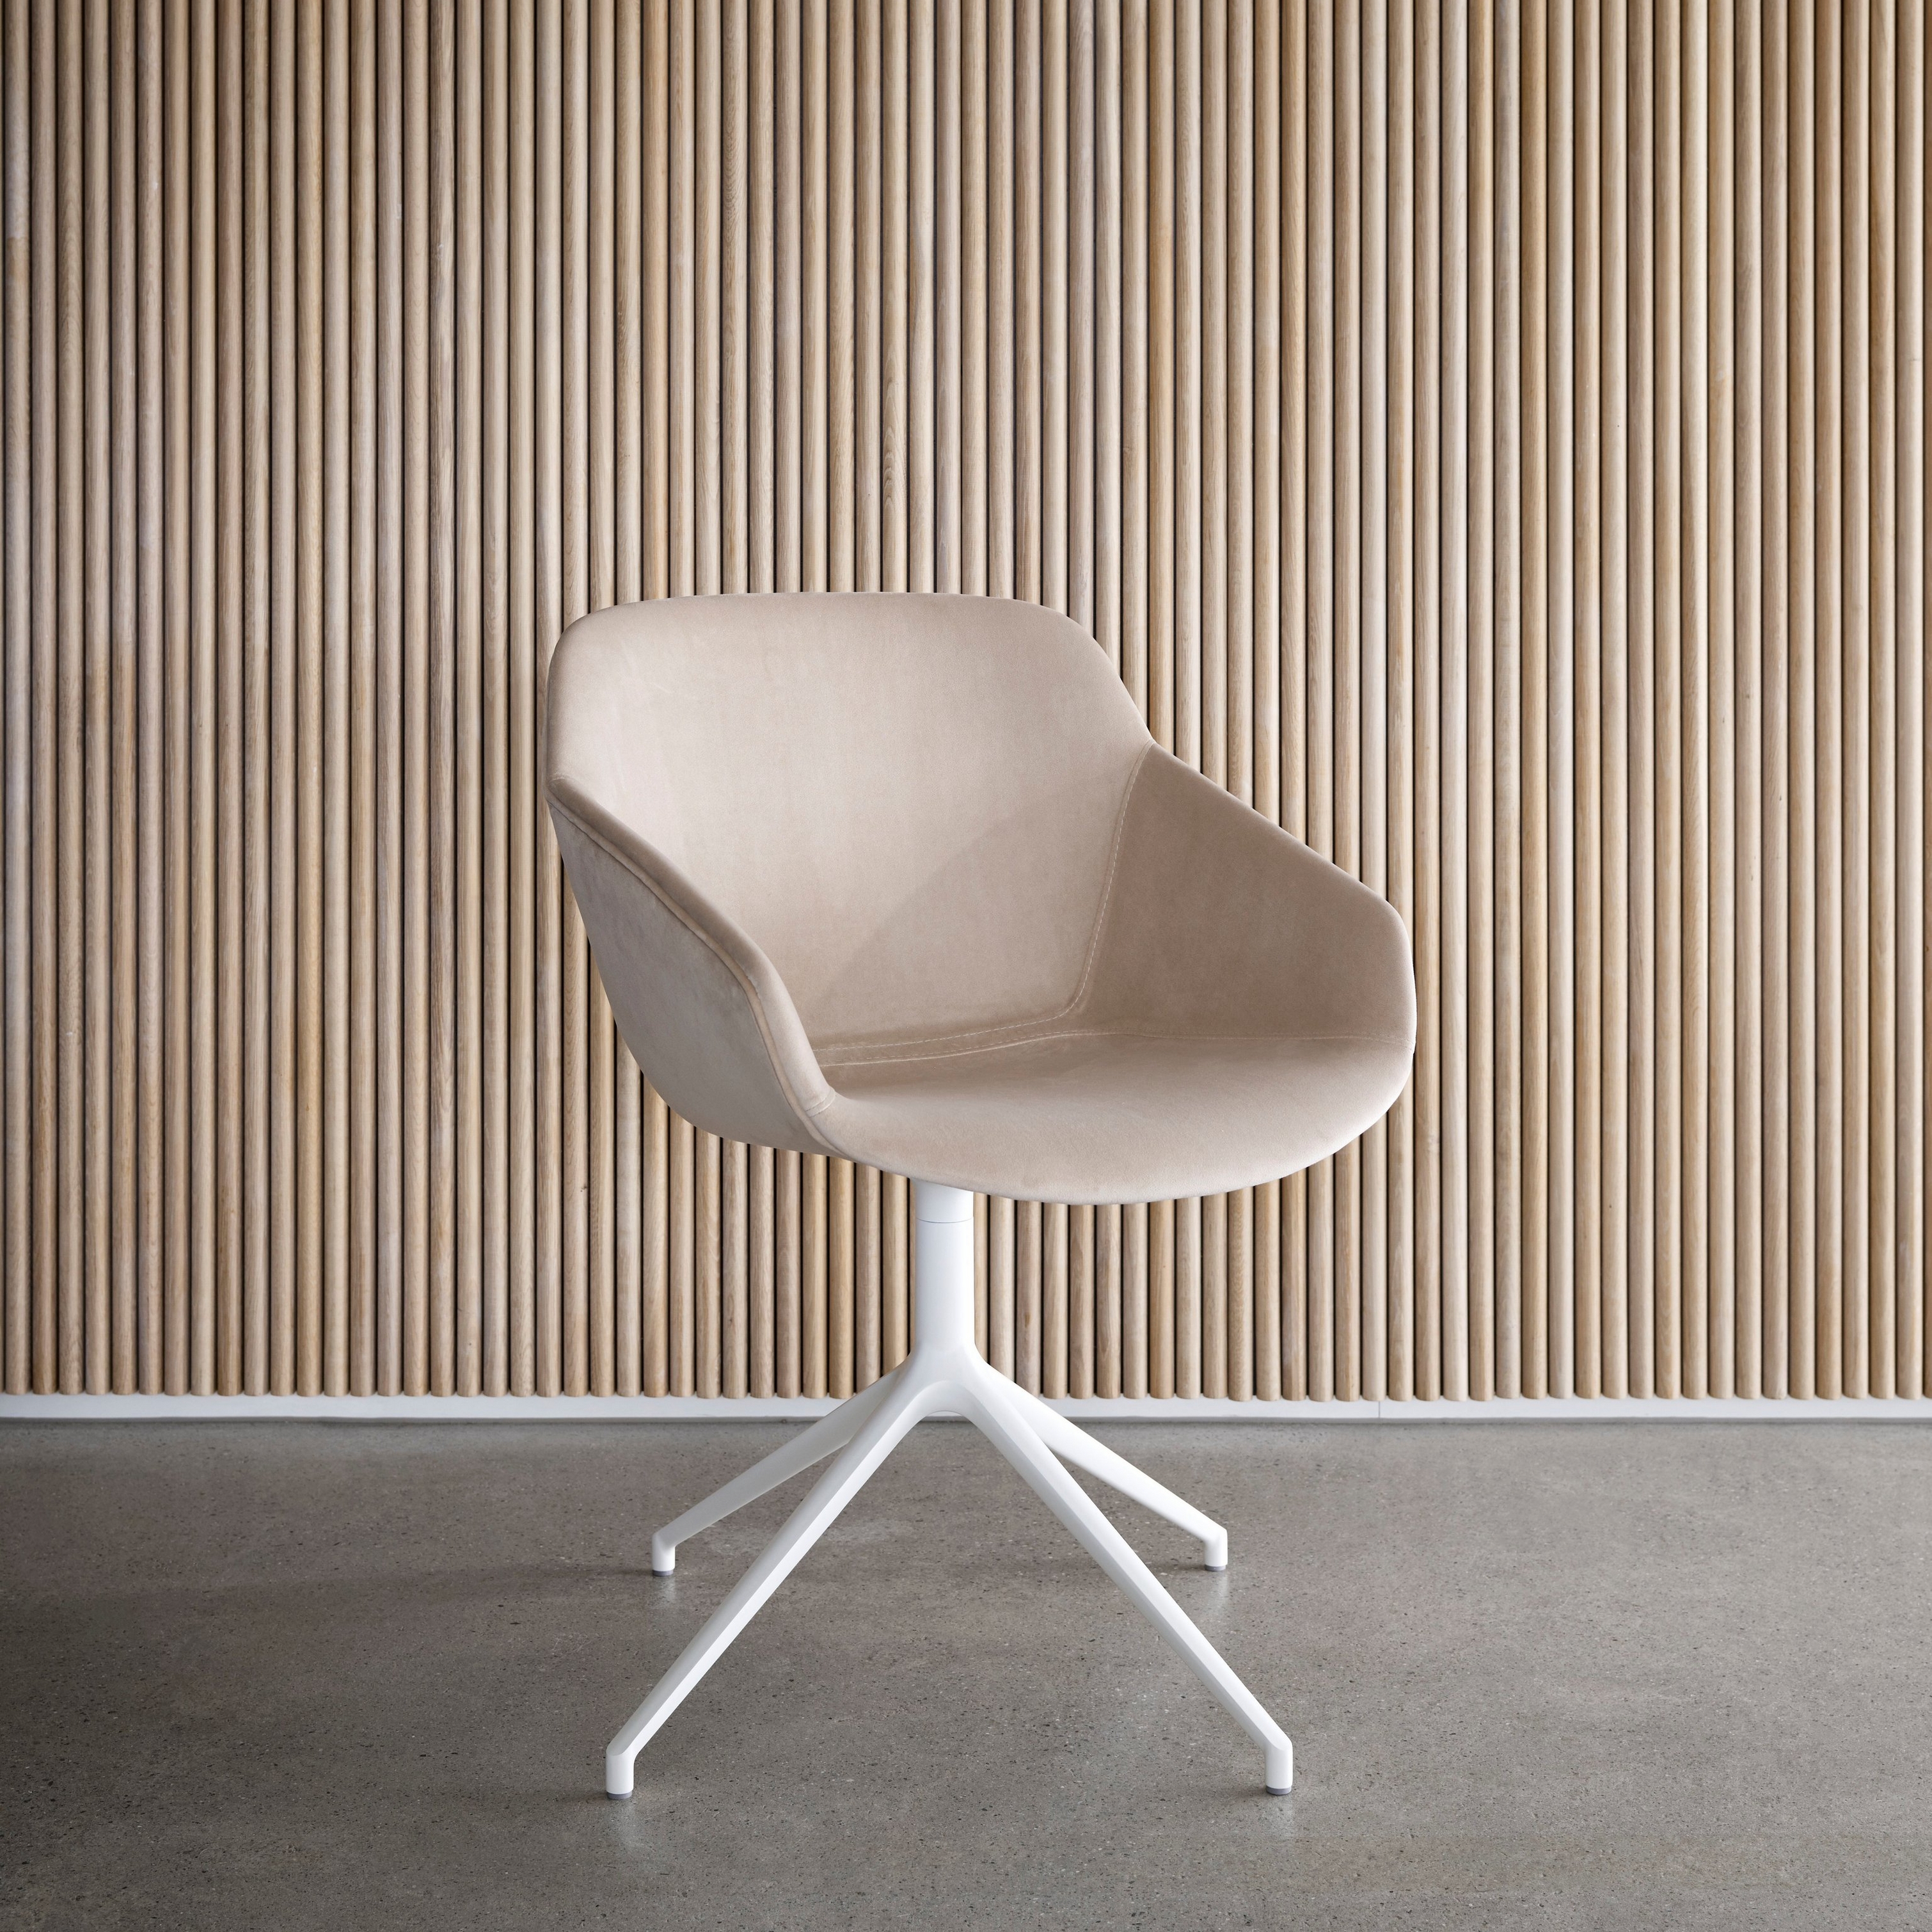 Бежевый стул с белым основанием на фоне стенки с вертикальными деревянными панелями.